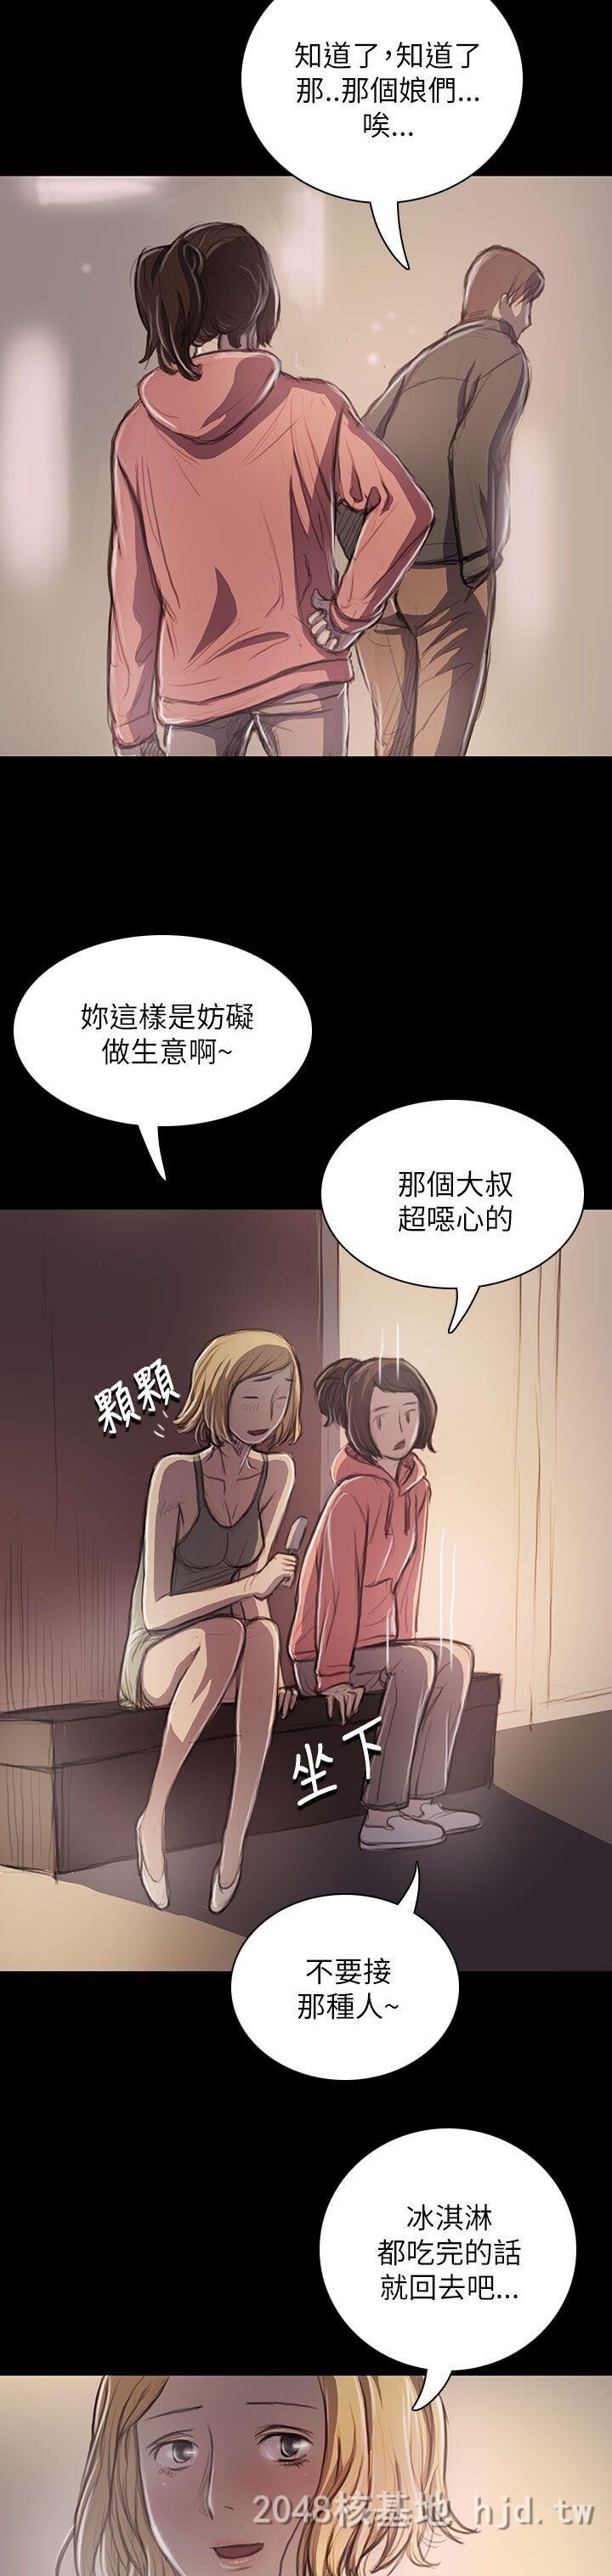 [中文]姐姐-莲19-20第0页 作者:Publisher 帖子ID:257764 TAG:动漫图片,卡通漫畫,2048核基地